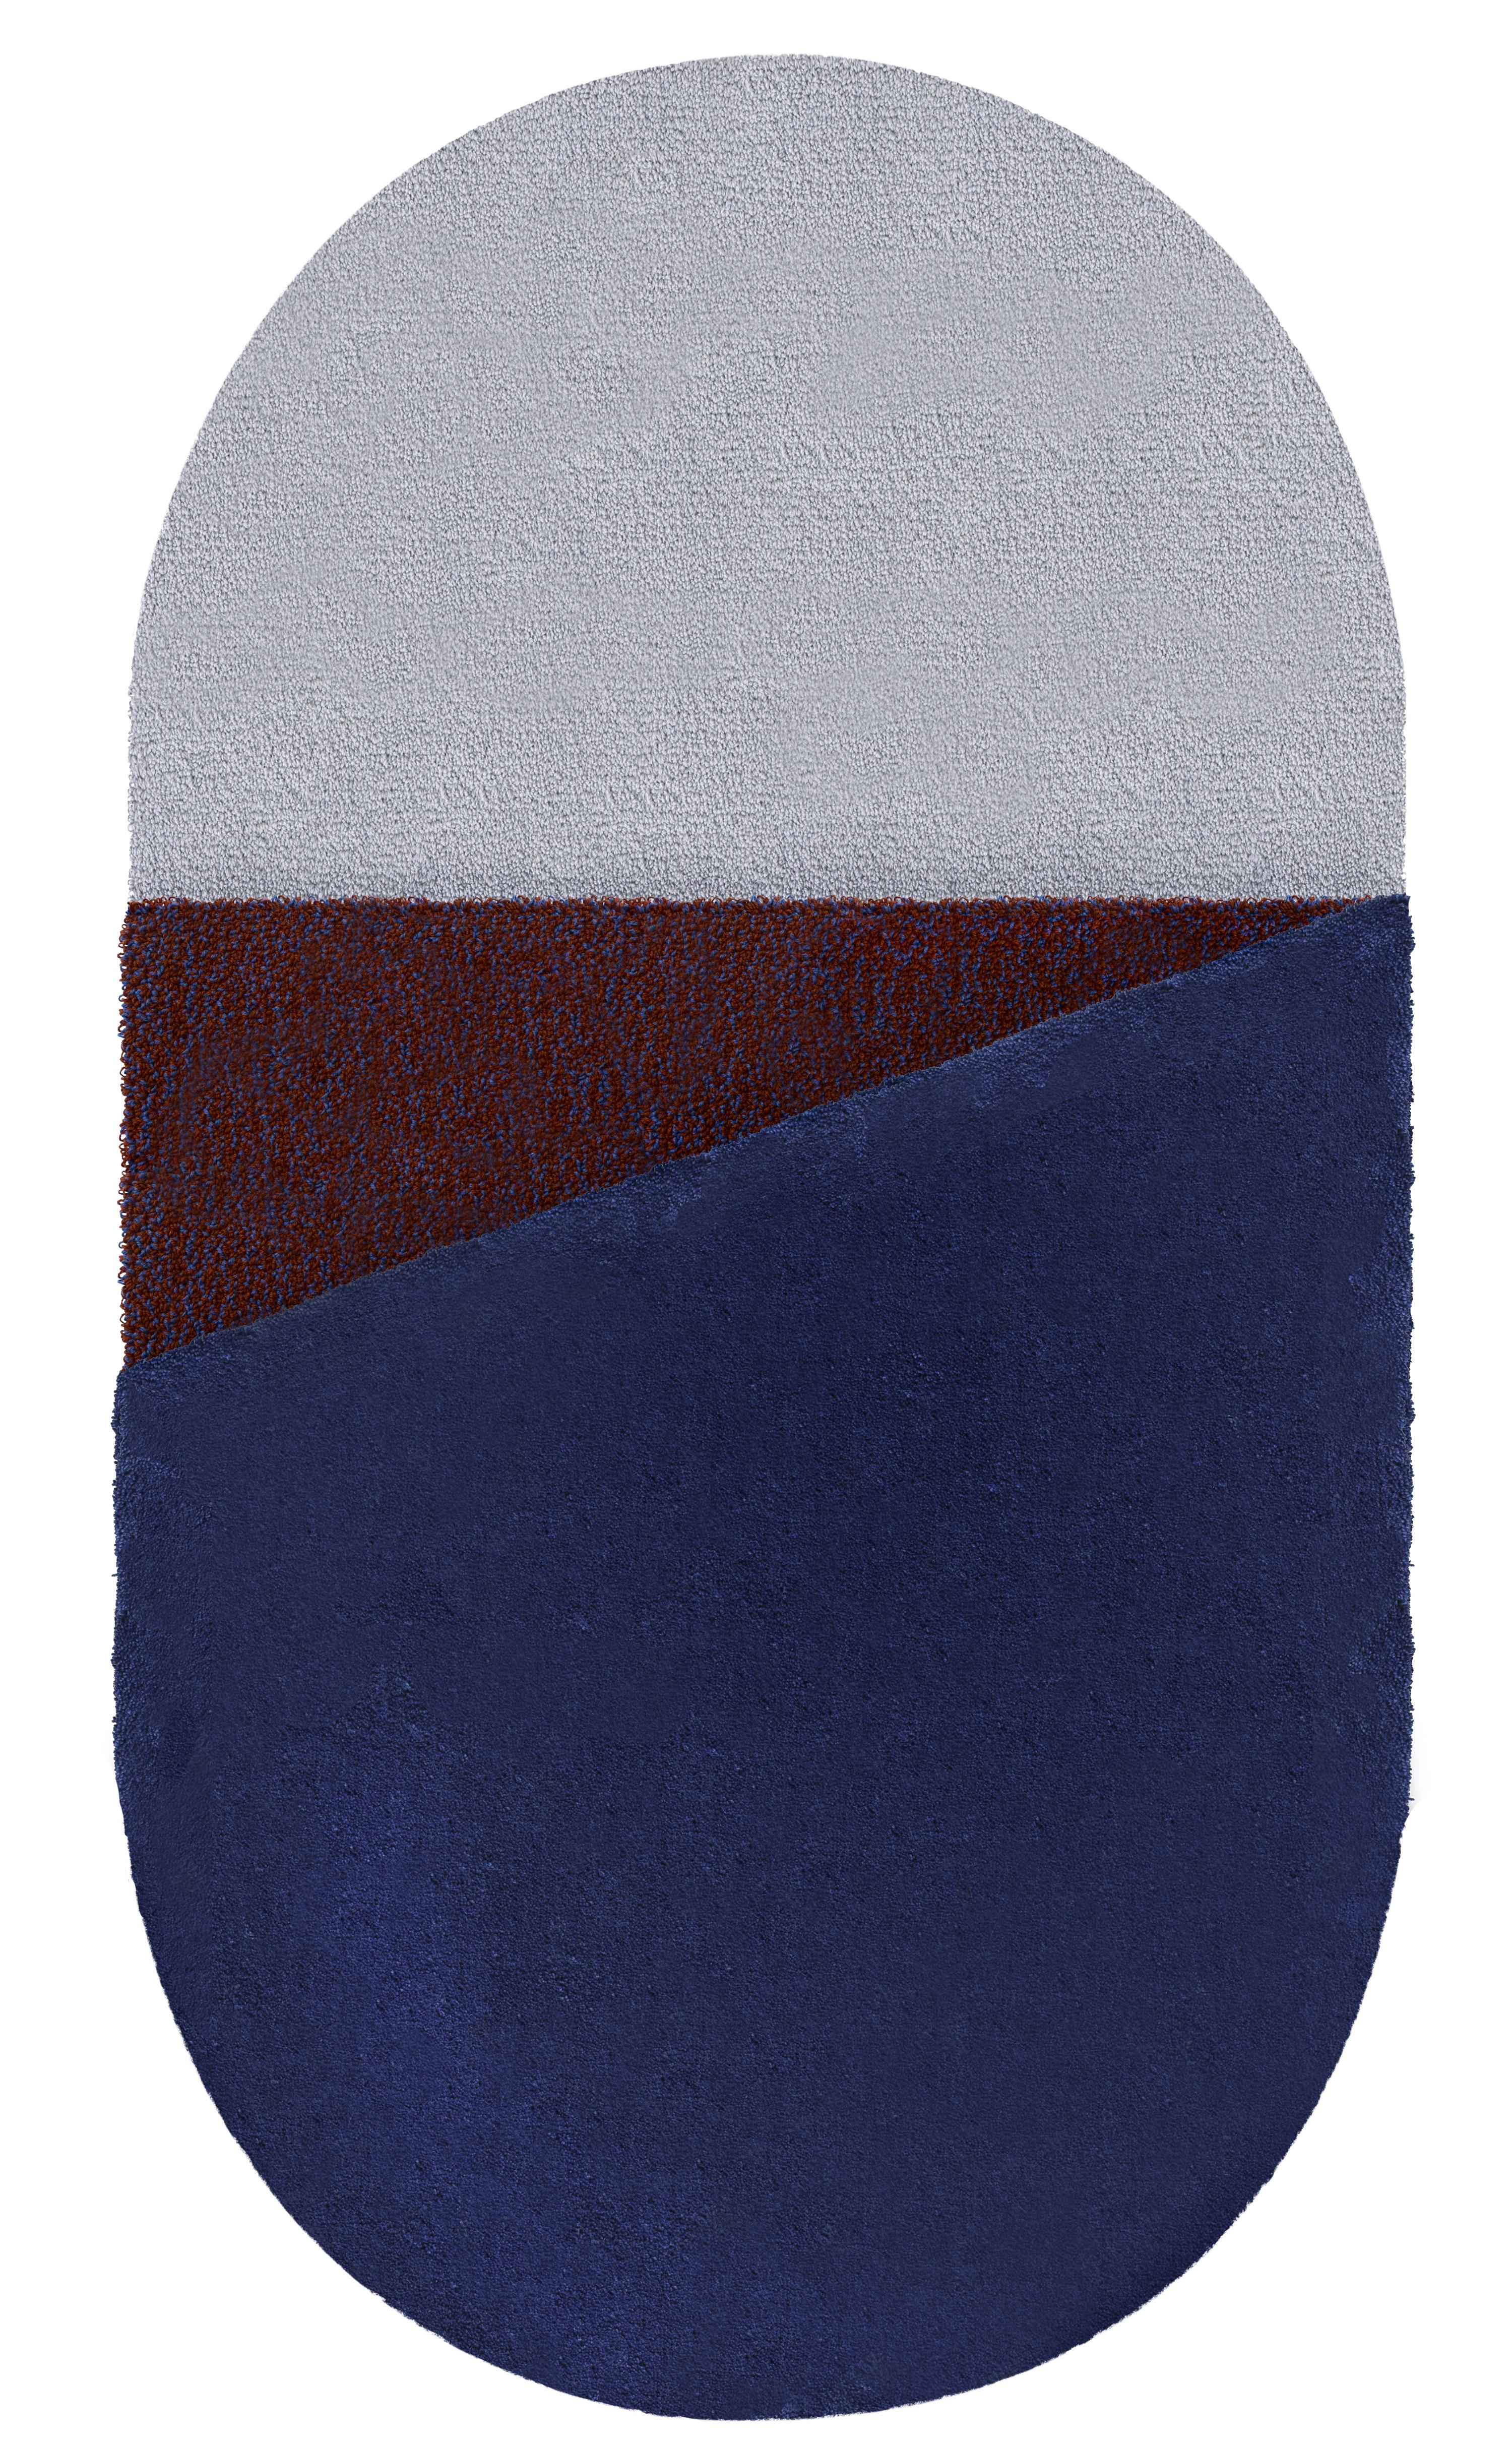 Wool Medium Blue Oci Triptych Rug by Seraina Lareida For Sale